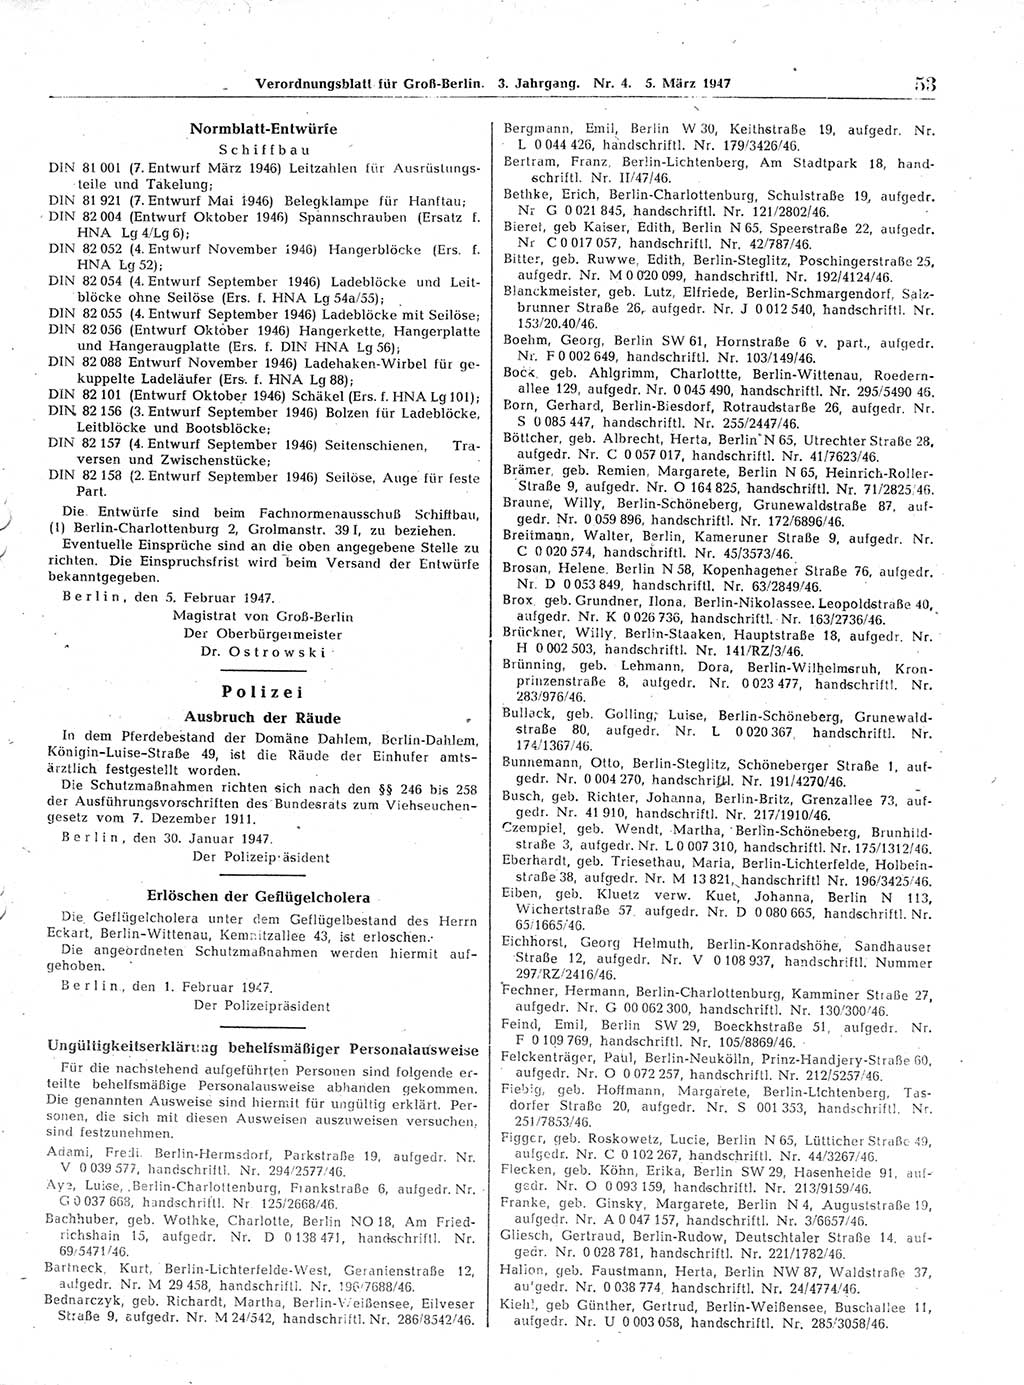 Verordnungsblatt (VOBl.) für Groß-Berlin 1947, Seite 53 (VOBl. Bln. 1947, S. 53)